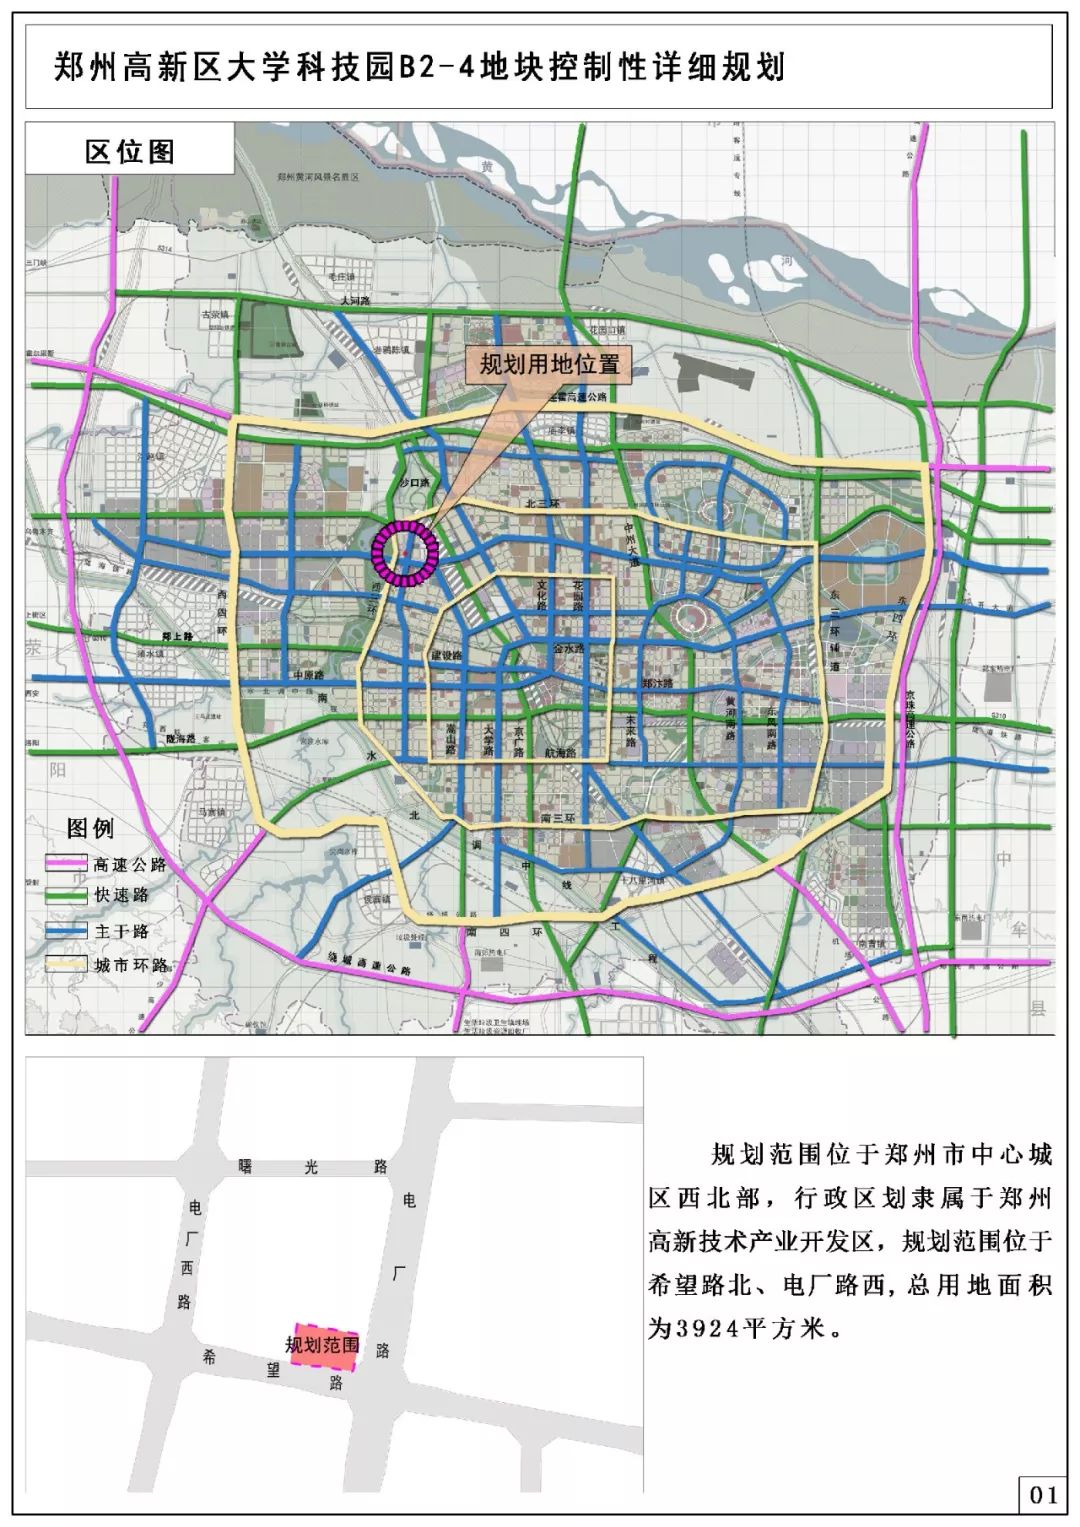 一周规划郑州高新区大学科技园b24地块控制性详细规划郑州高新区开元